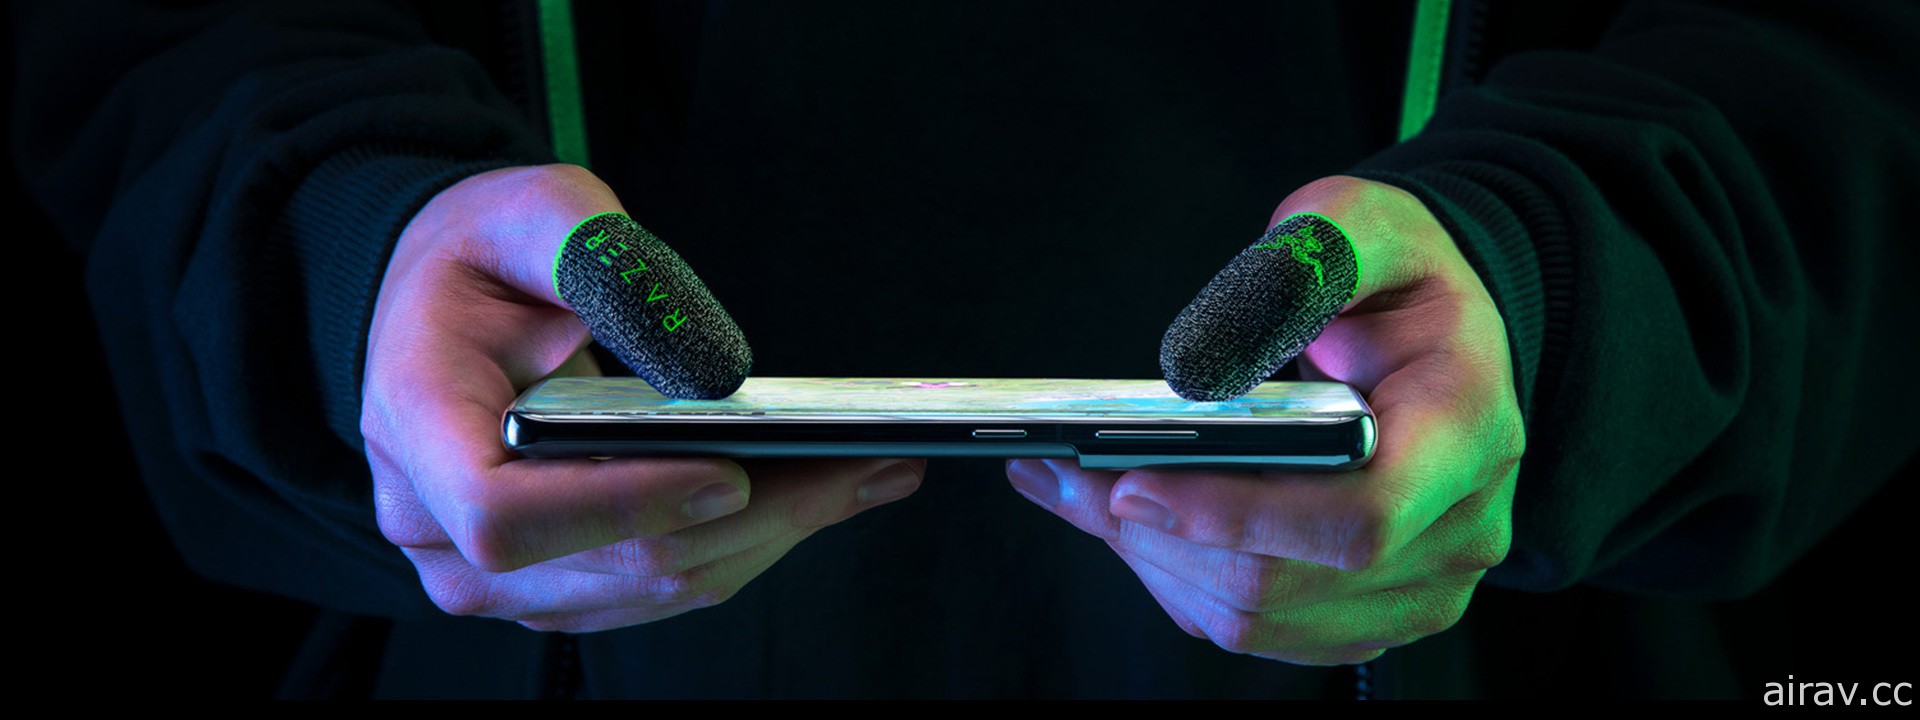 雷蛇推出手機遊戲專用「電競指套 Razer Gaming Finger Sleeve」 強調輕薄、高靈敏度